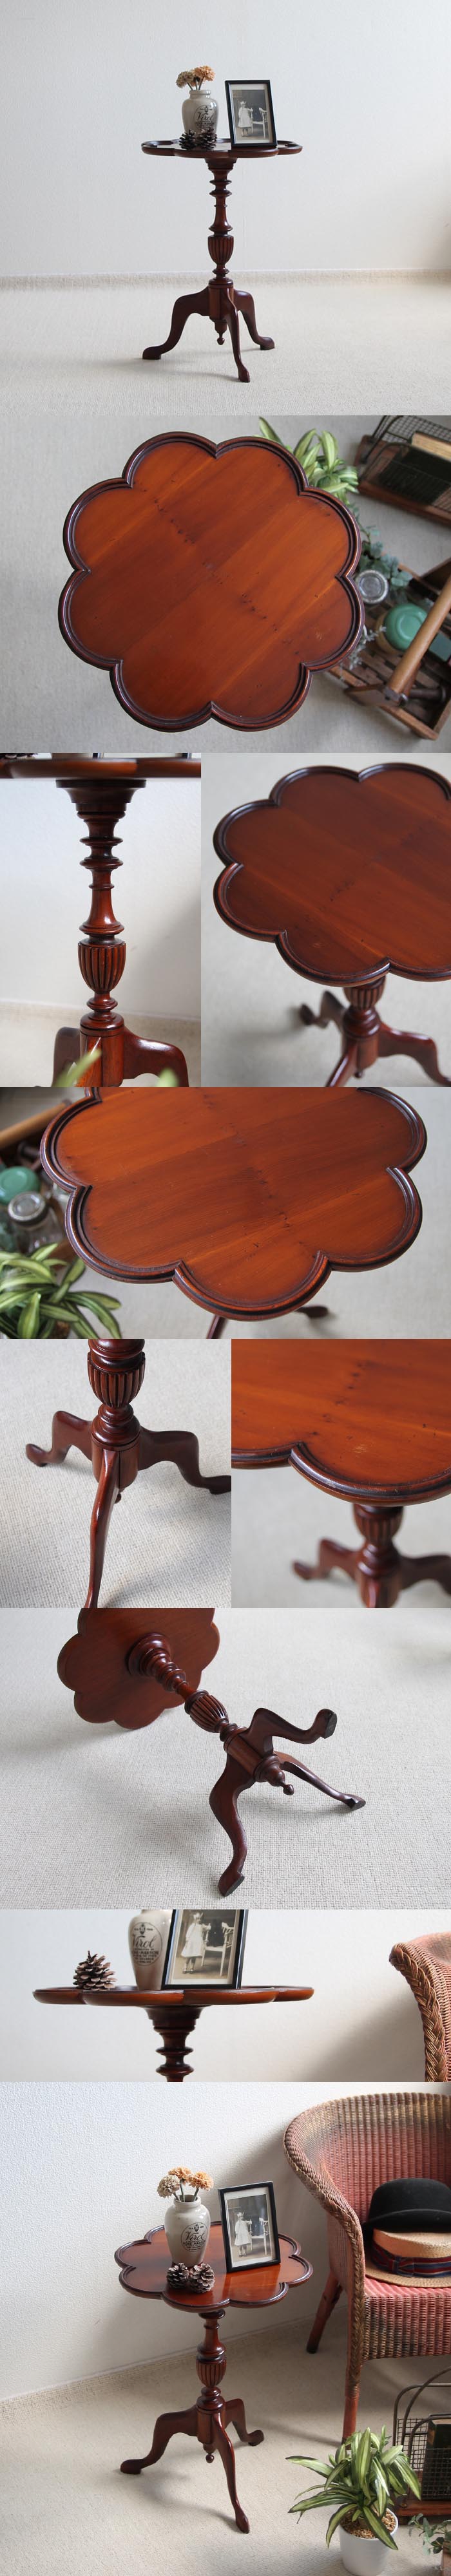 イギリス アンティーク調家具 木製ワインテーブル/サイドテーブル/花台【四つ葉のクローバーの様な天板】Y-456